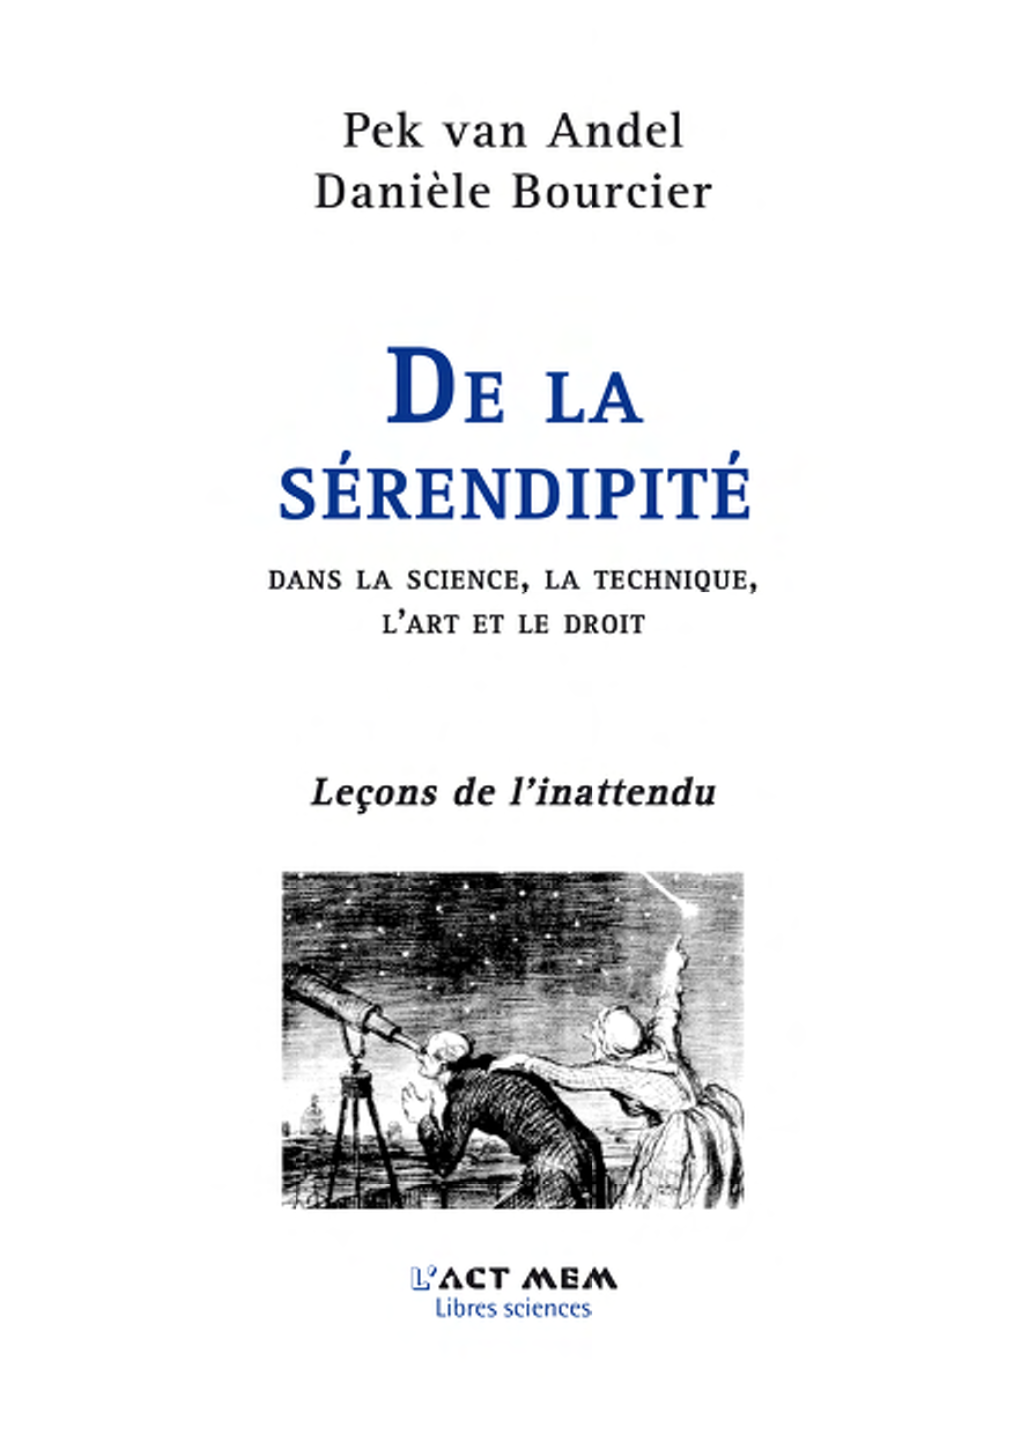 Serendipity Est Transcrit Comme « Le Don De Faire Des Trouvailles »